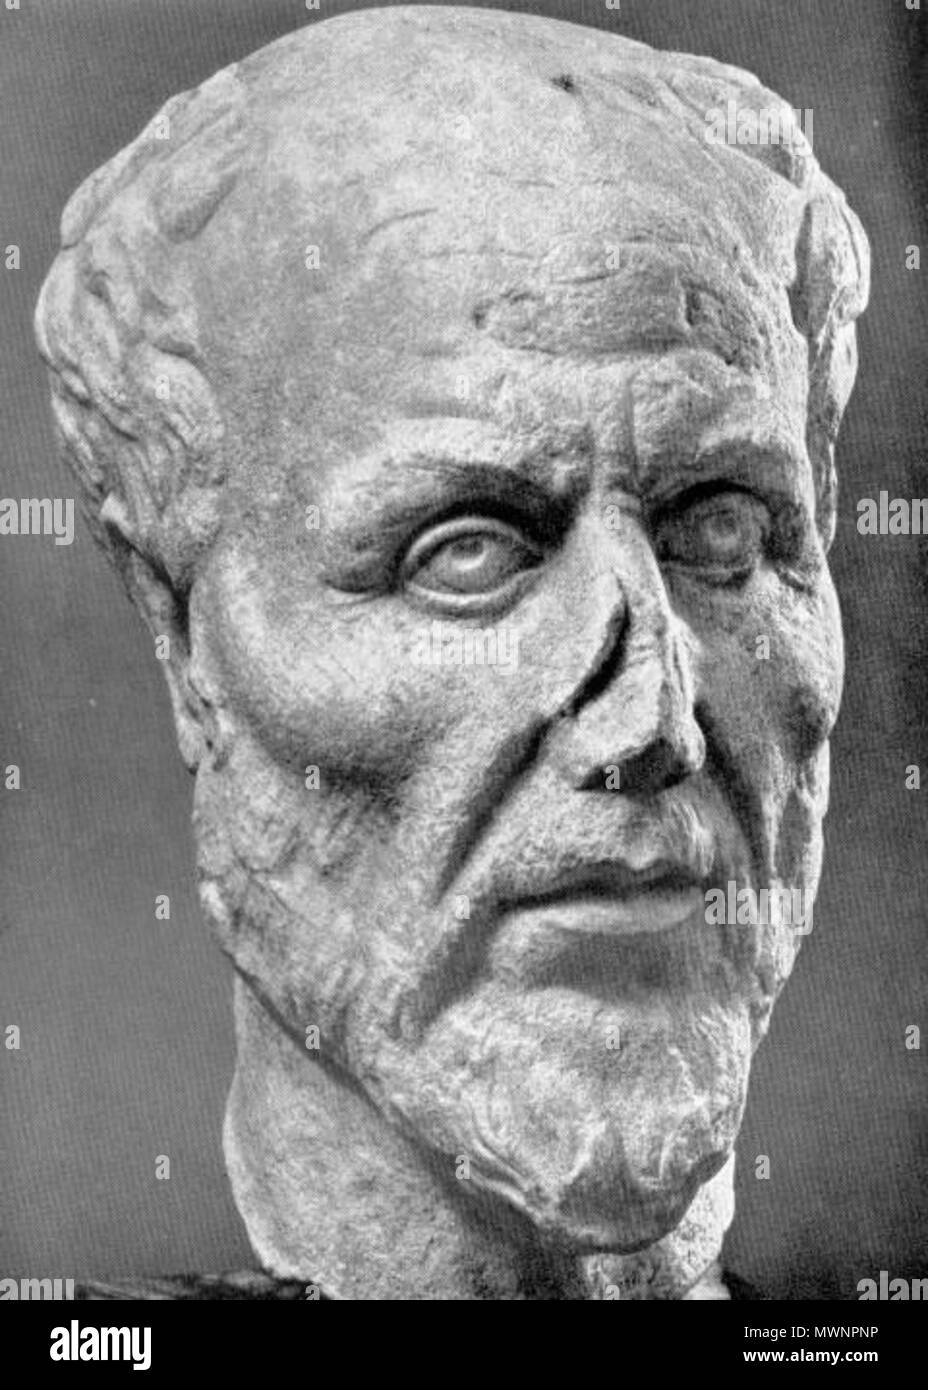 Englisch: Marmor Kopf. Ostia Antica, Museum, Inv. 68. Marmor Kopf durch den  Hals gebrochen. Untere Hälfte der Nase und der Rand der linken Ohr  beschädigt. Einer der vier Ableger, die alle